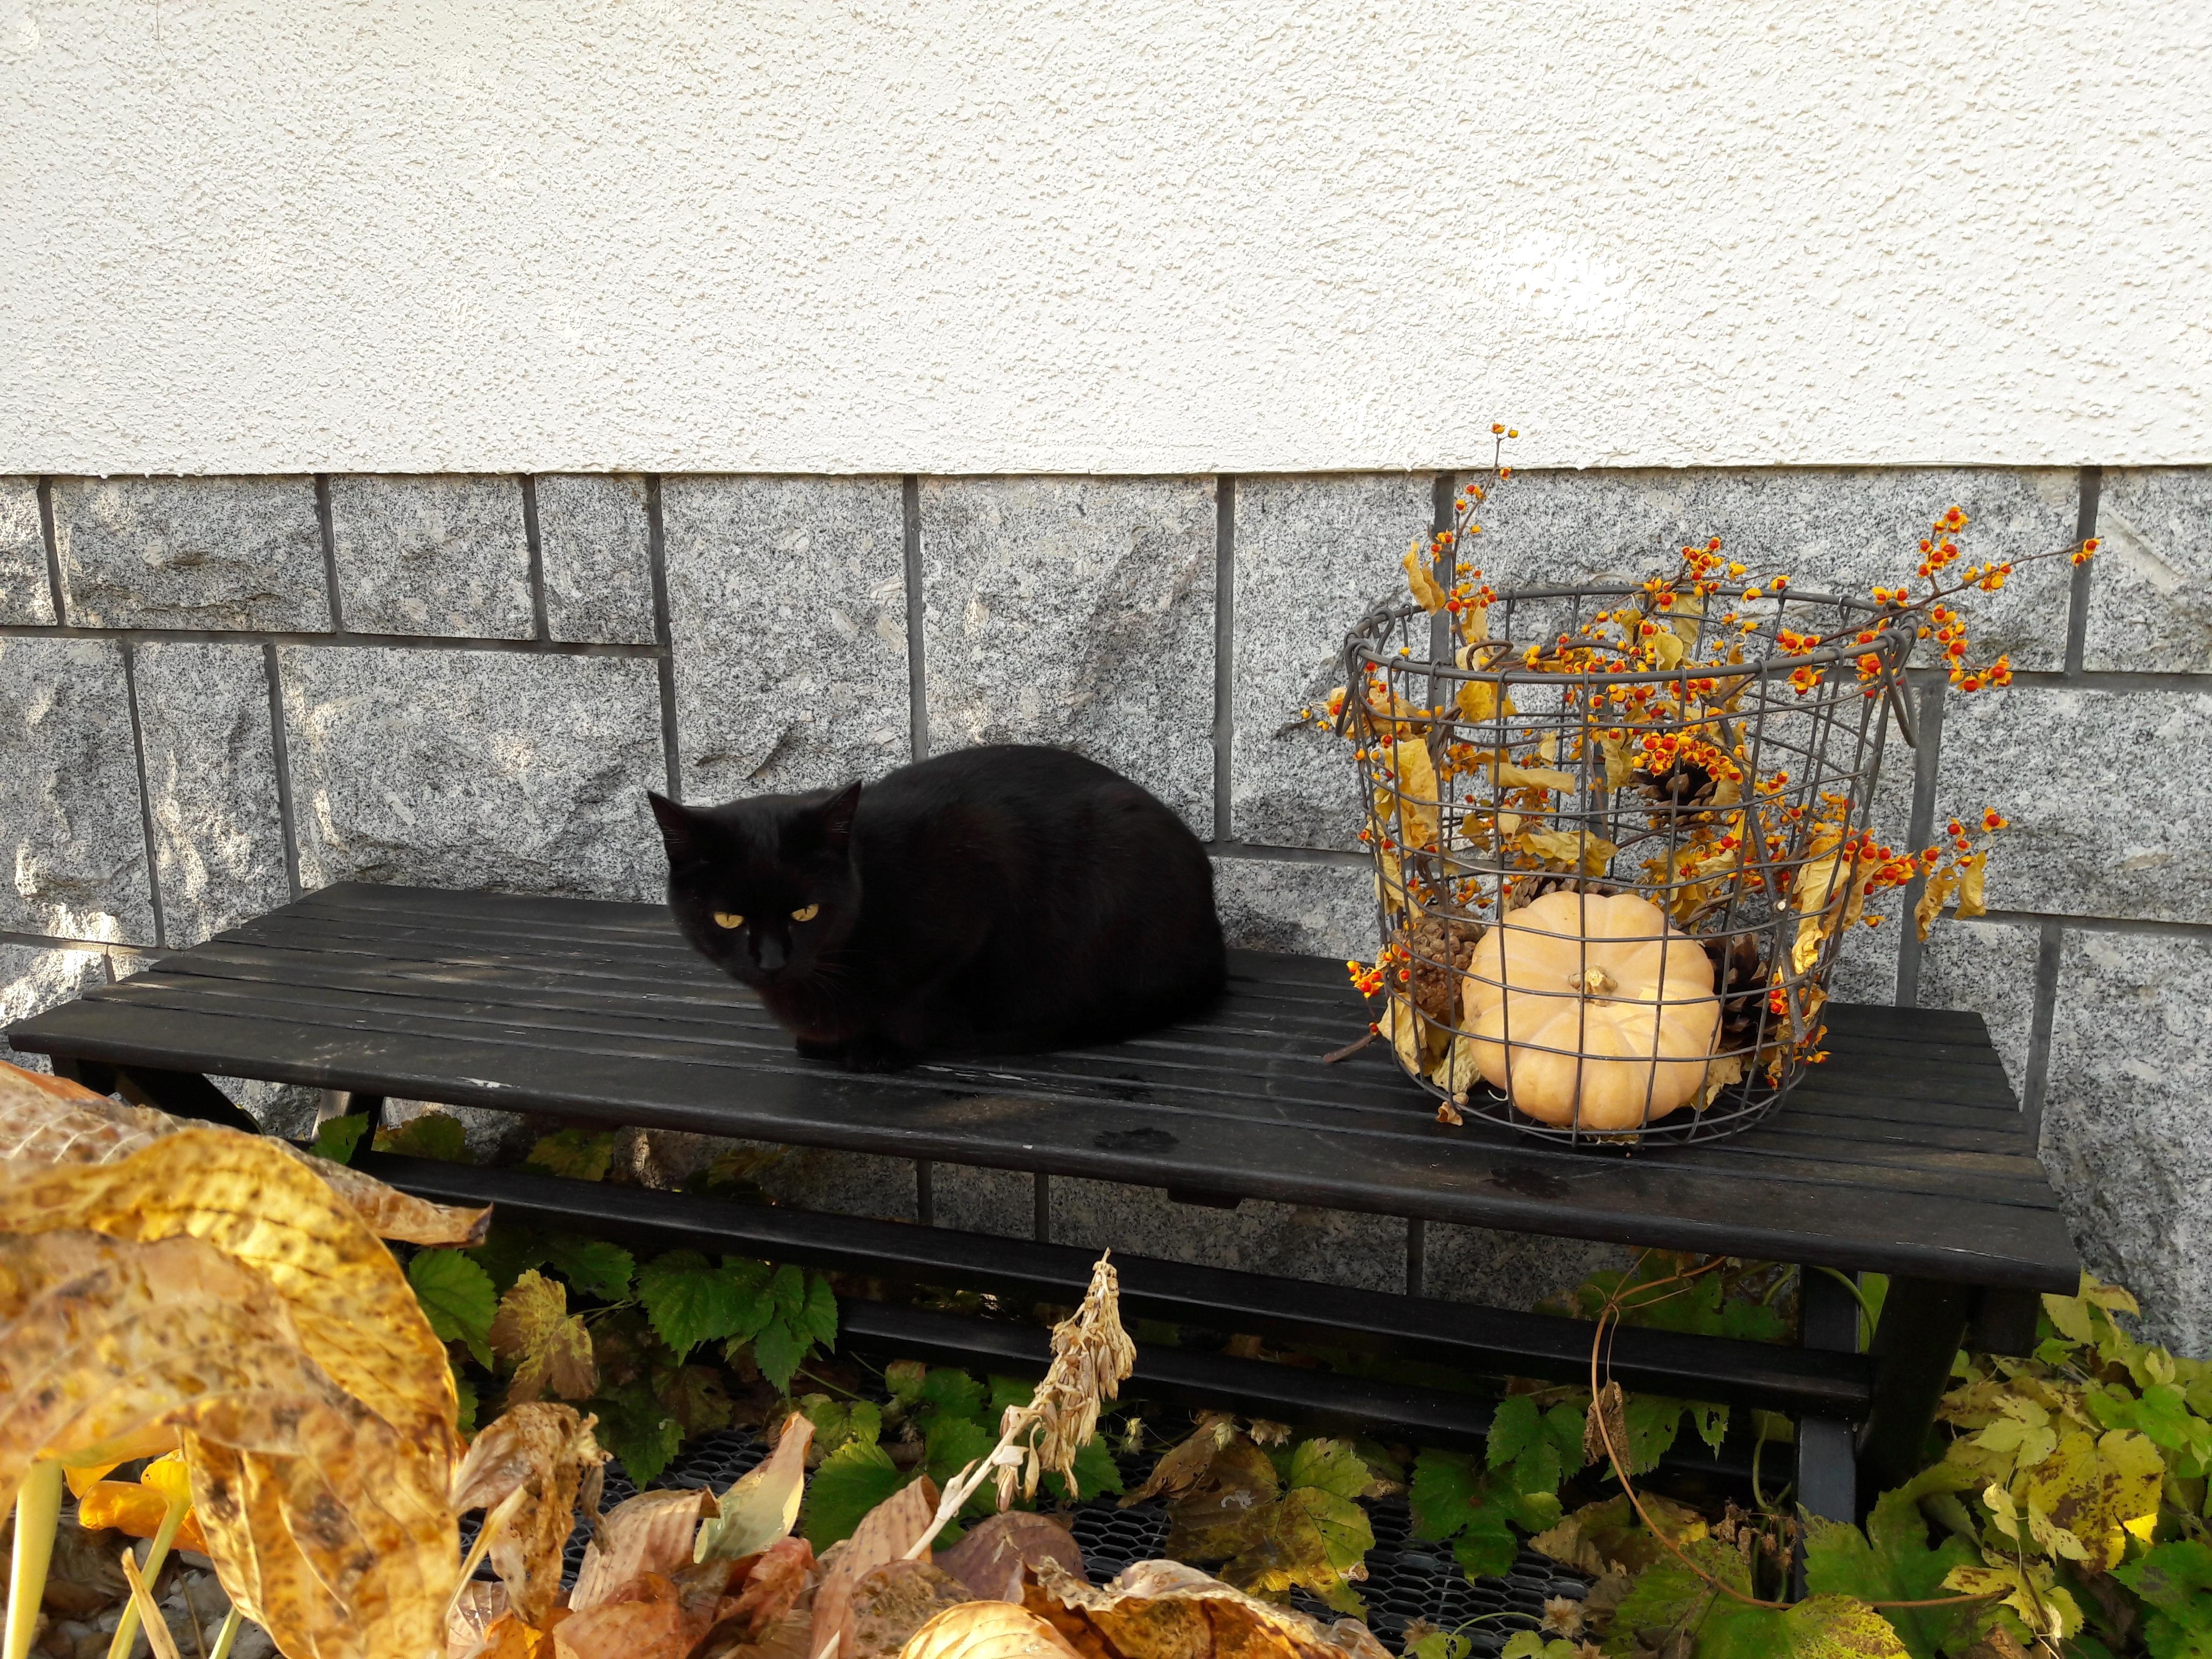 Schönste #Herbstdeko überhaupt!!!😻
#katze #cat #garten